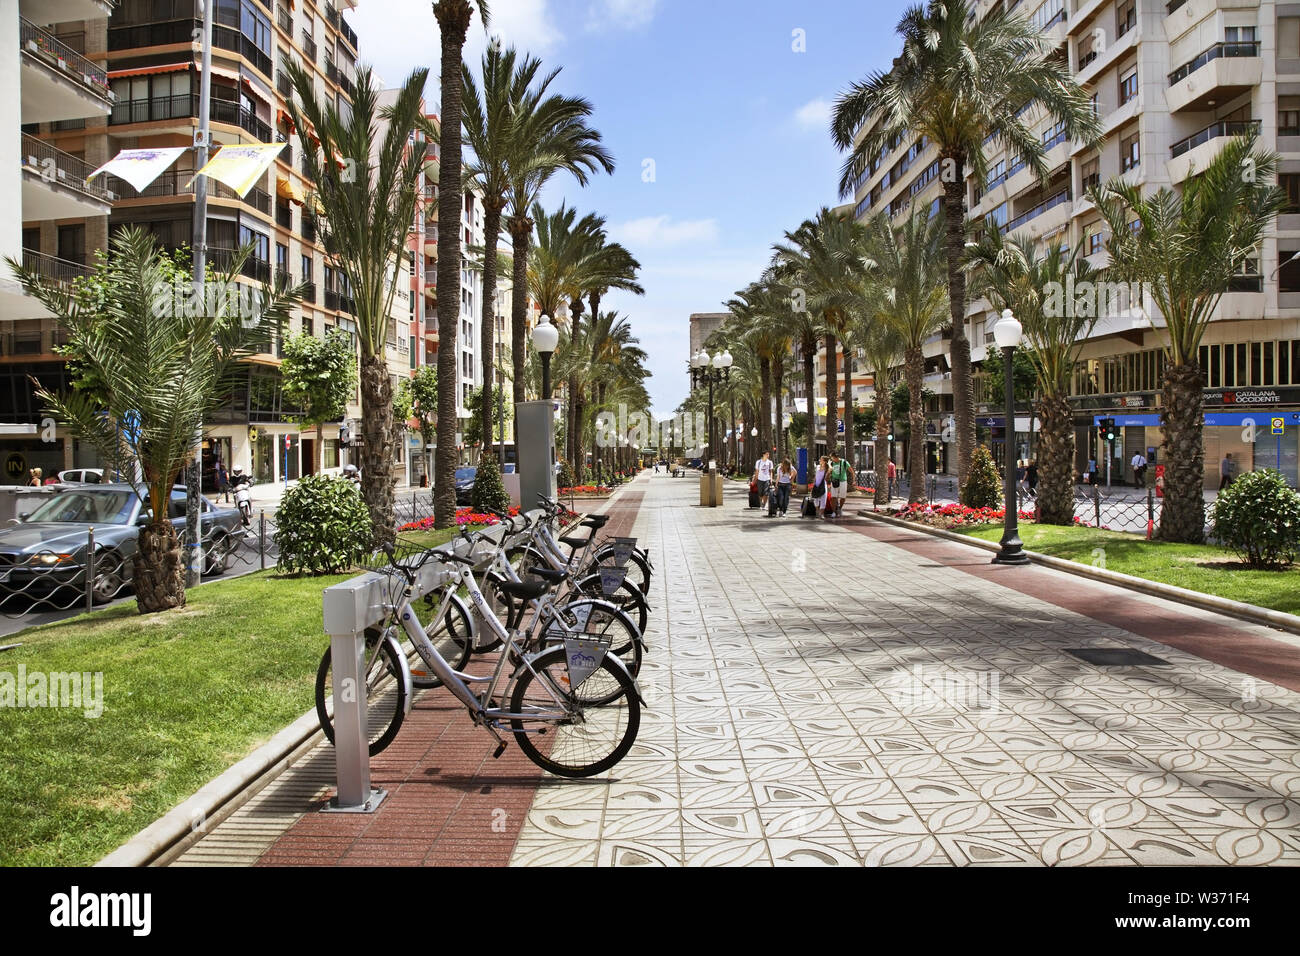 Avenida Federico Soto in Alicante. Spain Stock Photo - Alamy